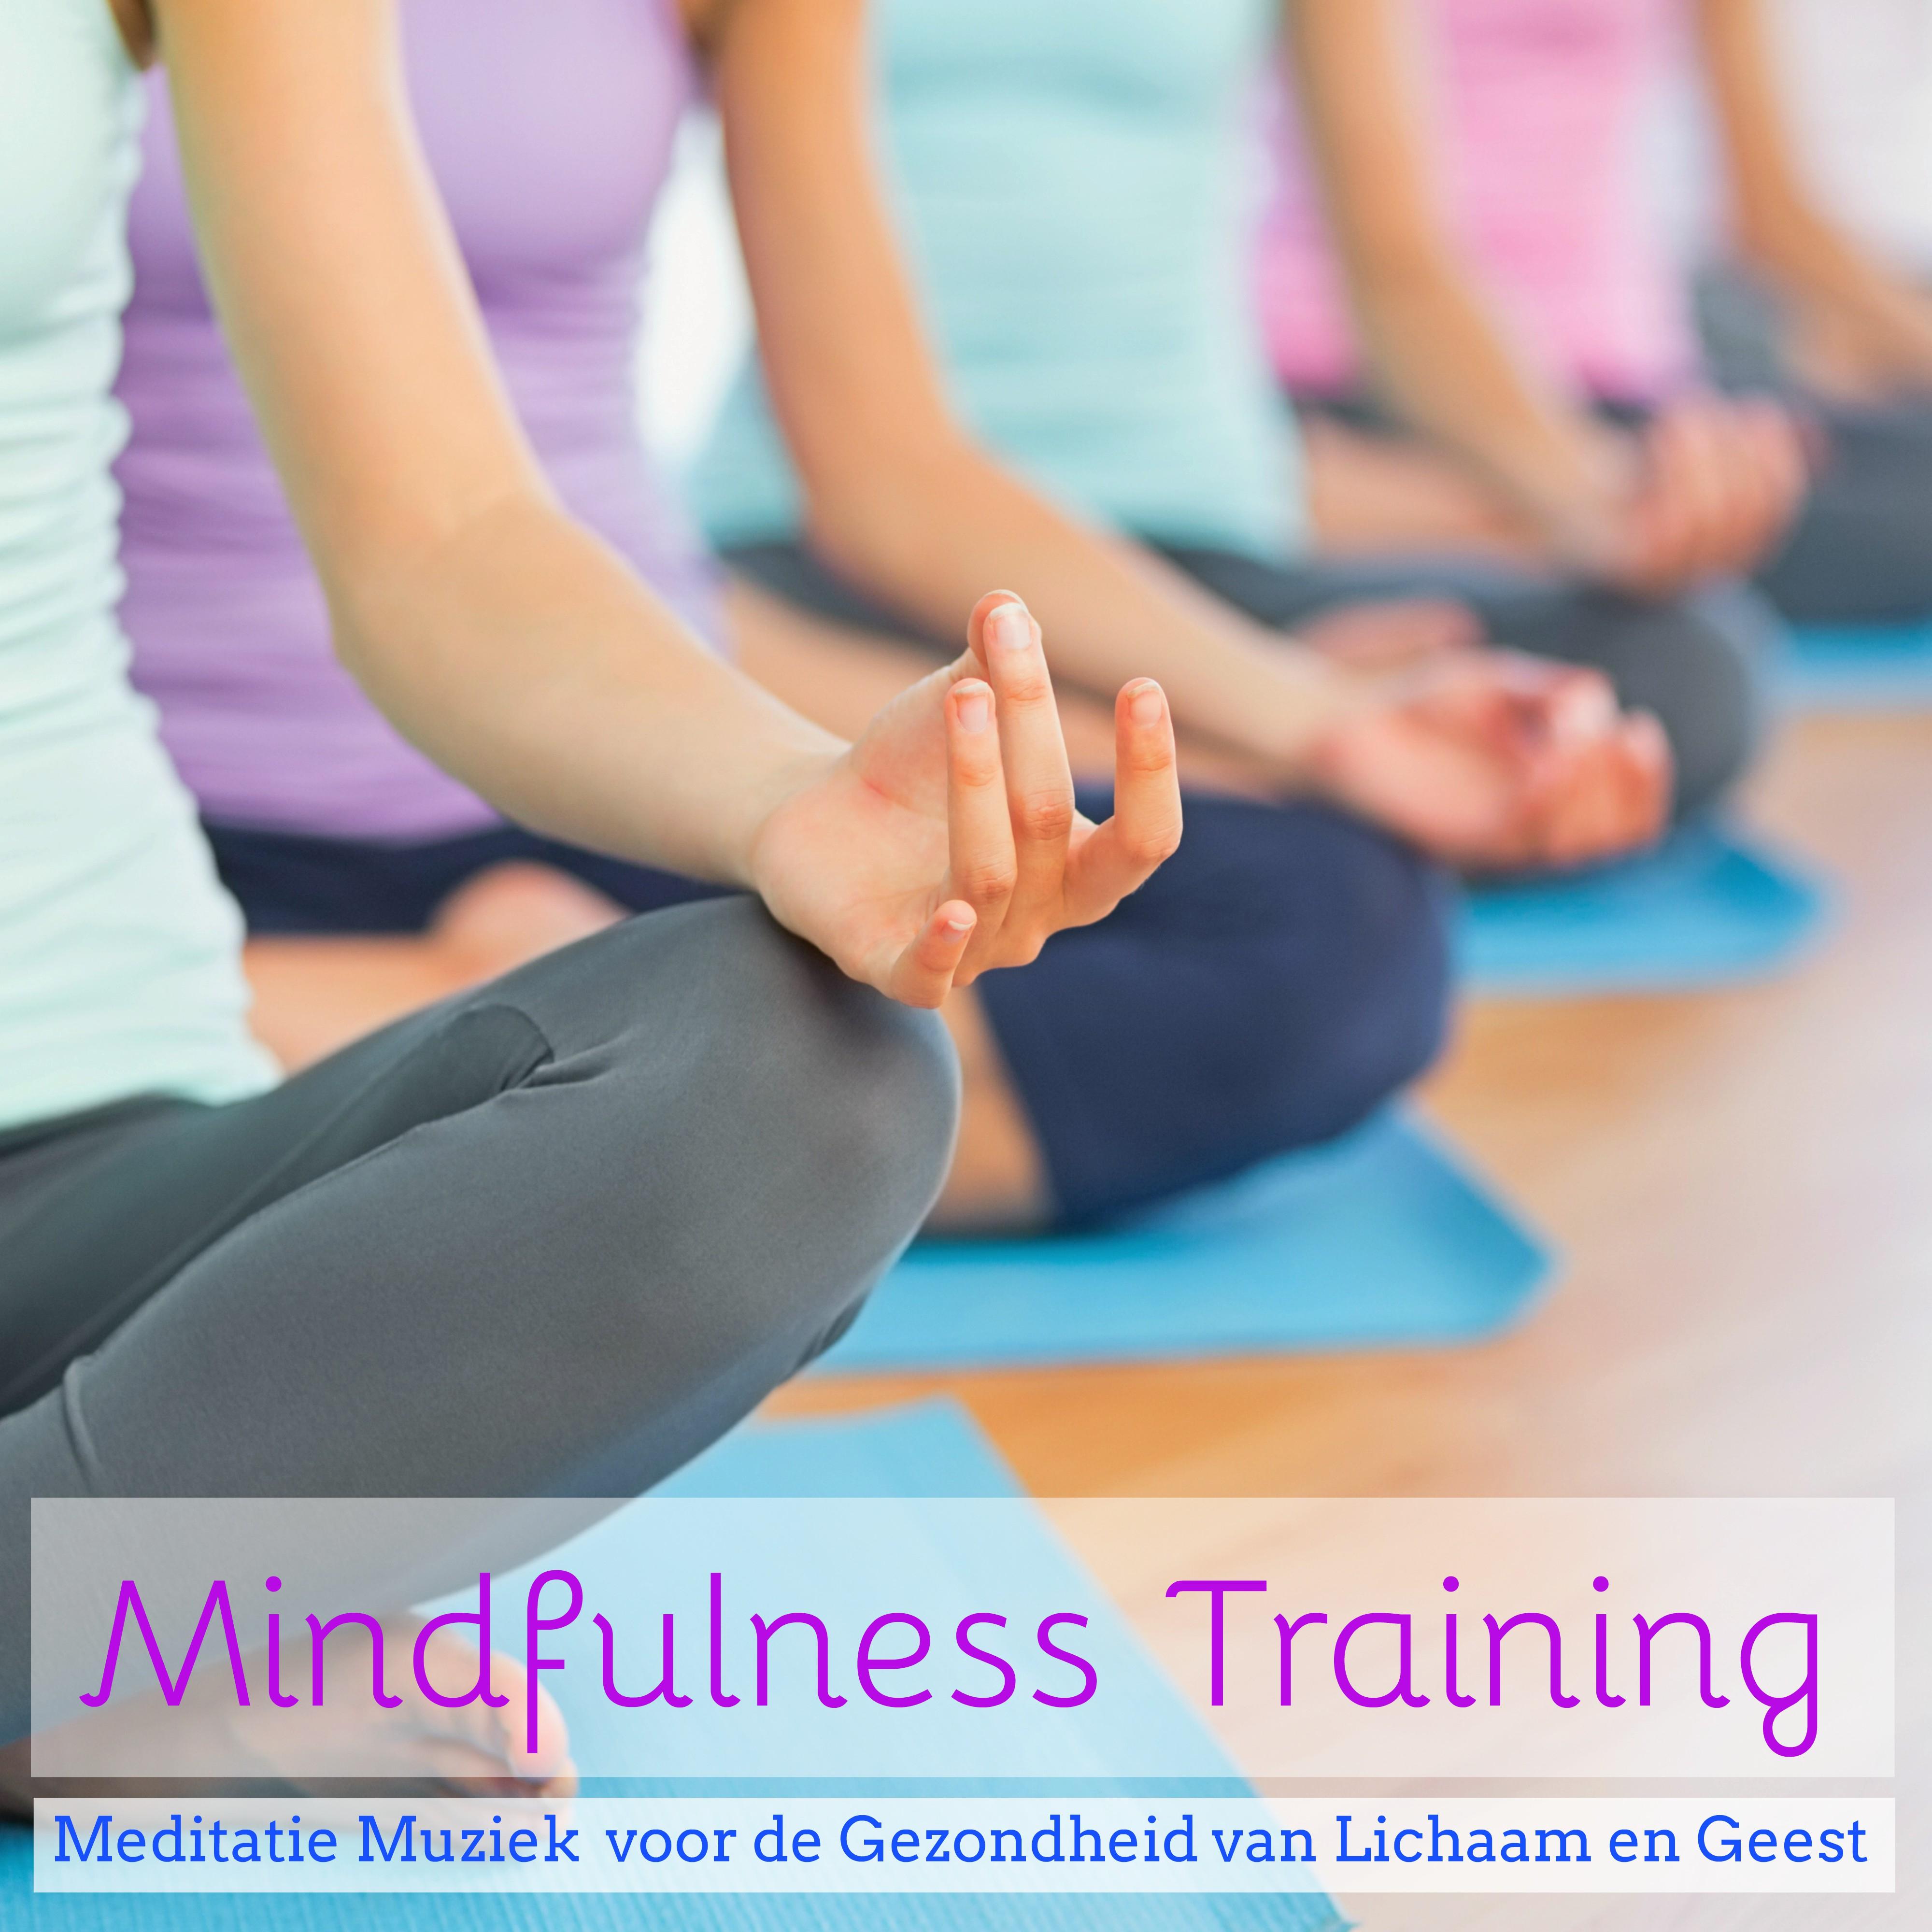 Mindfulness Training - Meditatie Muziek  voor de Gezondheid van Lichaam en Geest, Natuurgeluiden Instrumentale Muziek